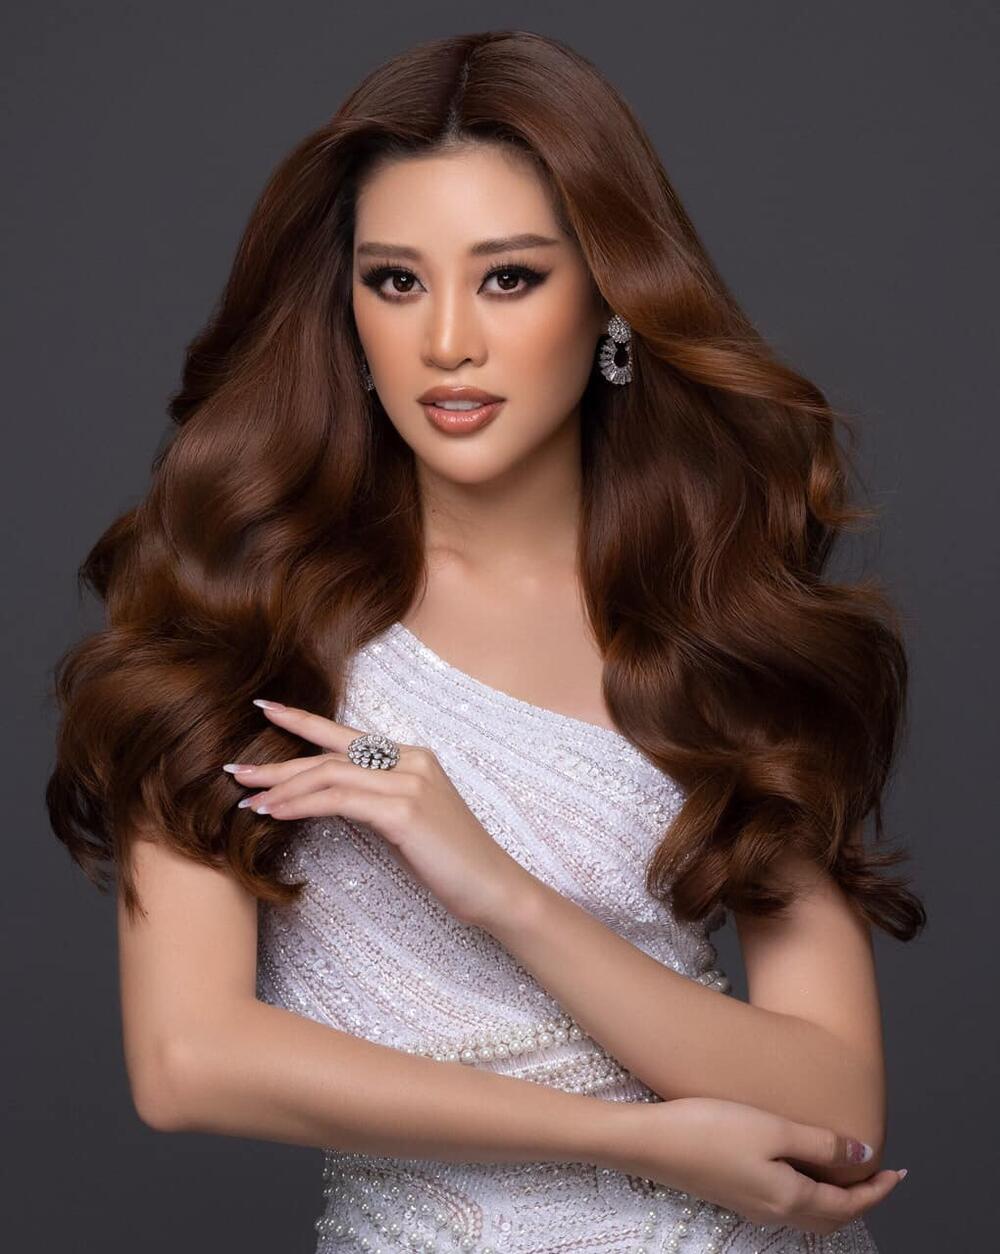 Missosology loại thẳng Khánh Vân ra khỏi Top 20, đưa Philippines Top 5 Miss Universe: Fan phản ứng dữ dội Ảnh 8